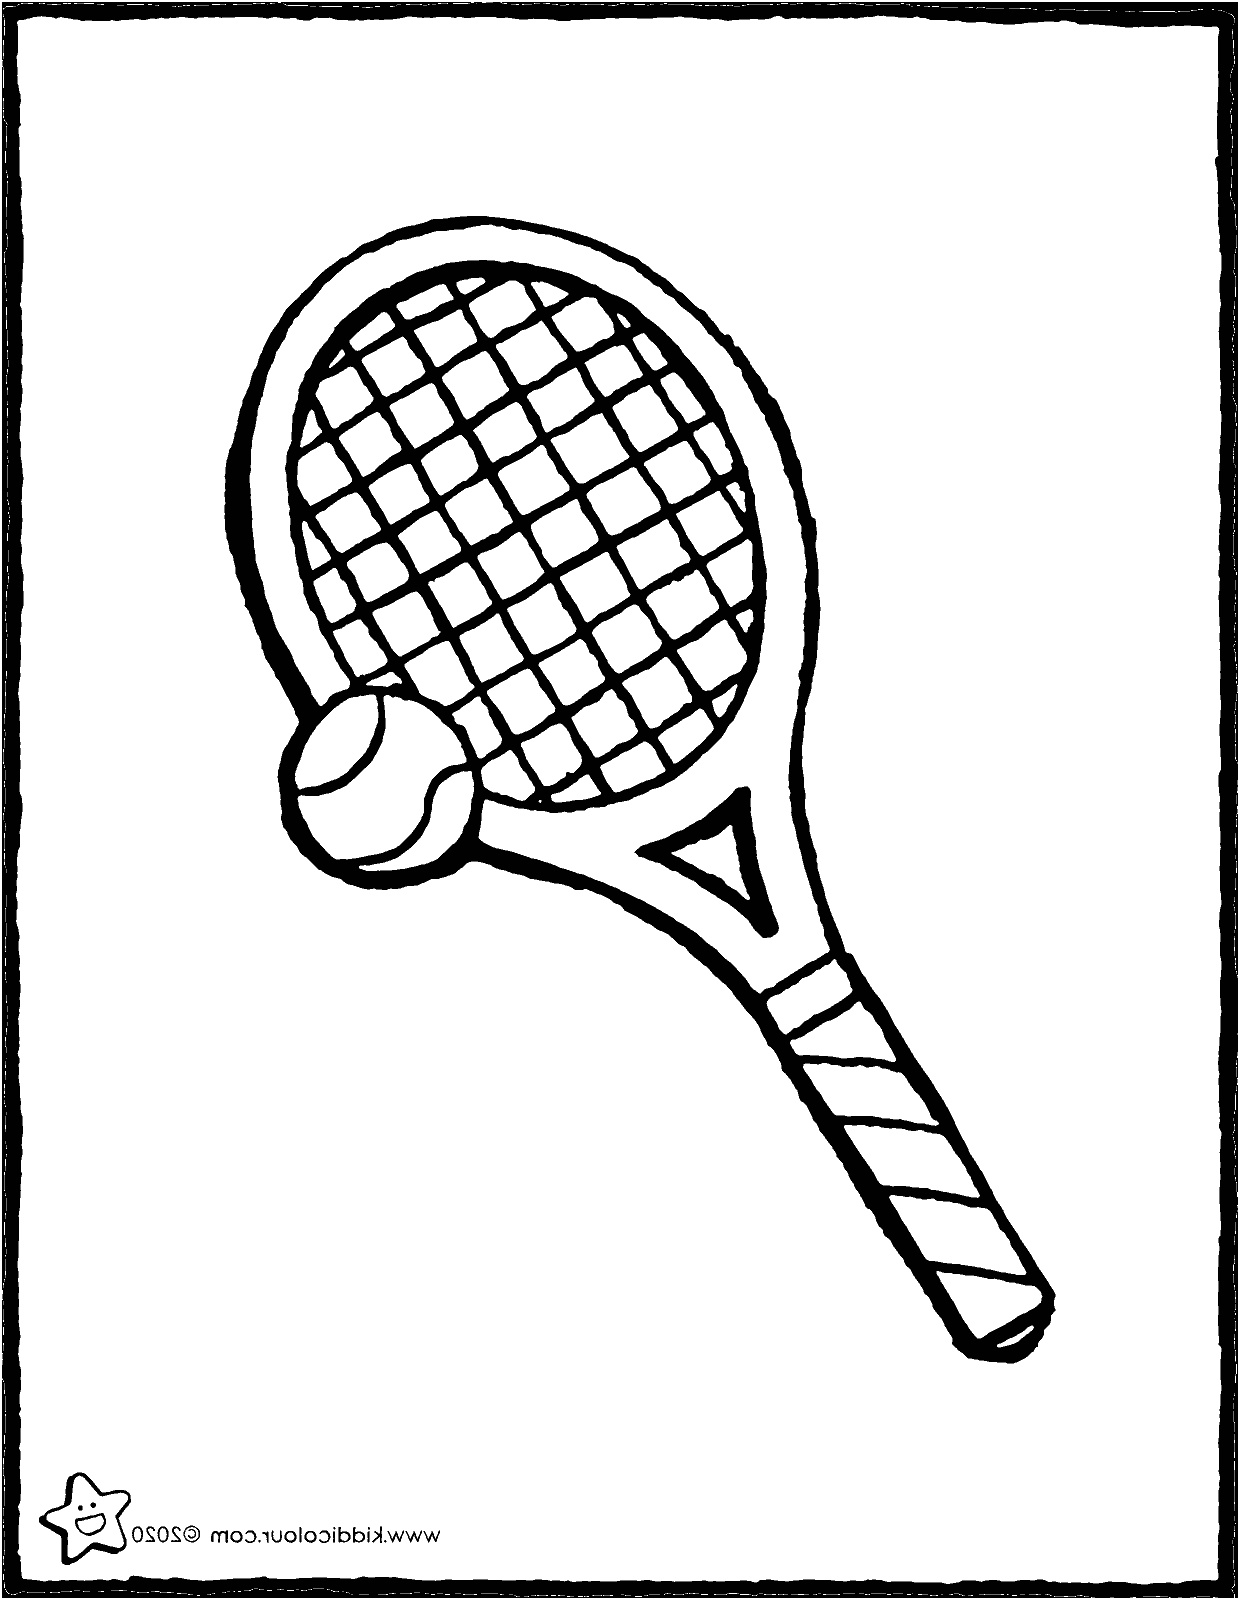 raquette et balle de tennis